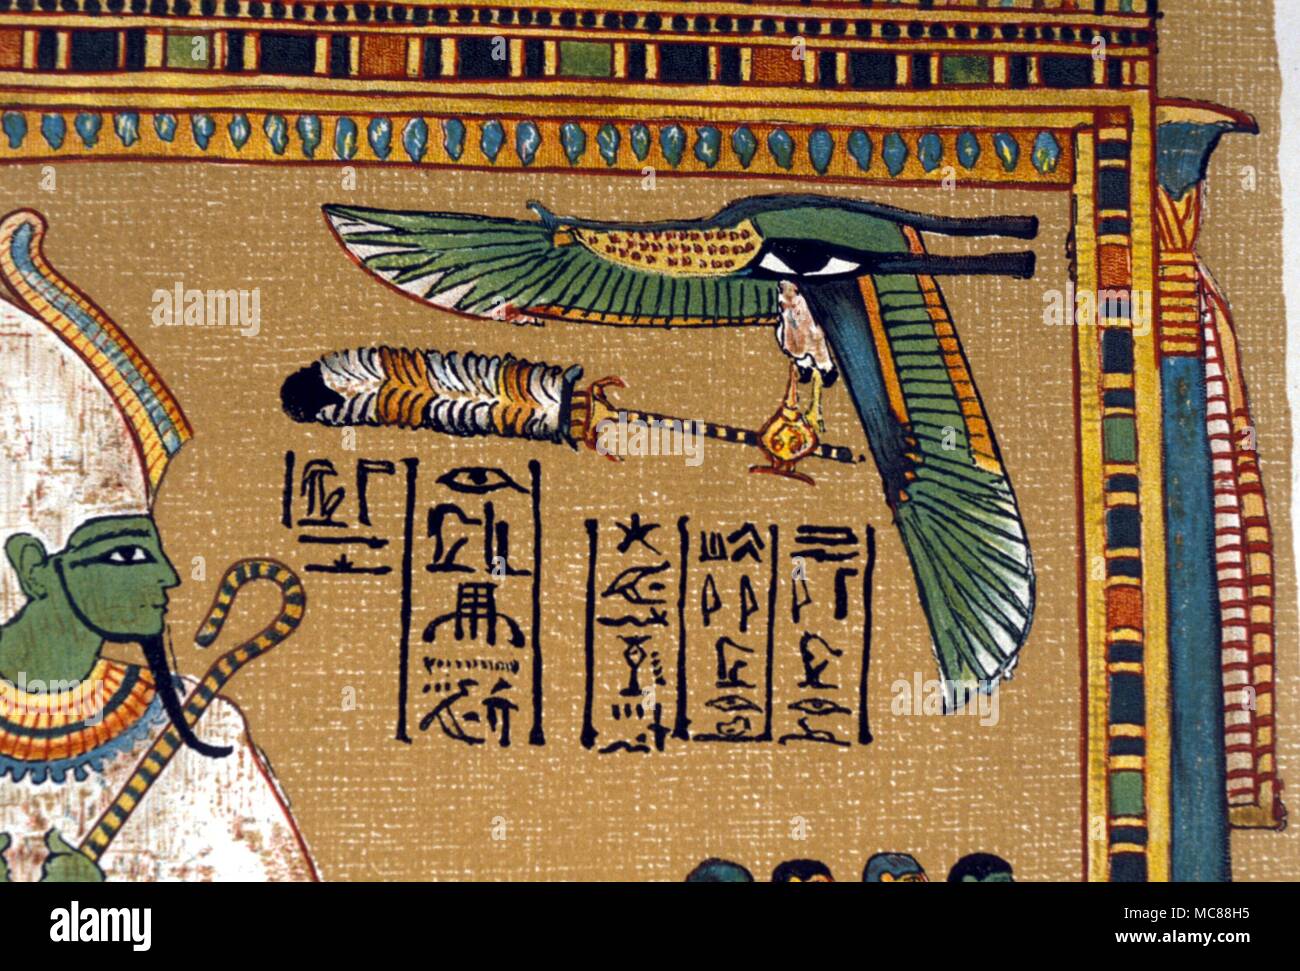 Mito egipcio - serpiente alada serpiente alada - Detalle de la escena de Osiris entronizado dentro de un santuario. El Papiro de Hunefer el egipcio libro de los muertos. Siglo xix copia litográfica. Foto de stock